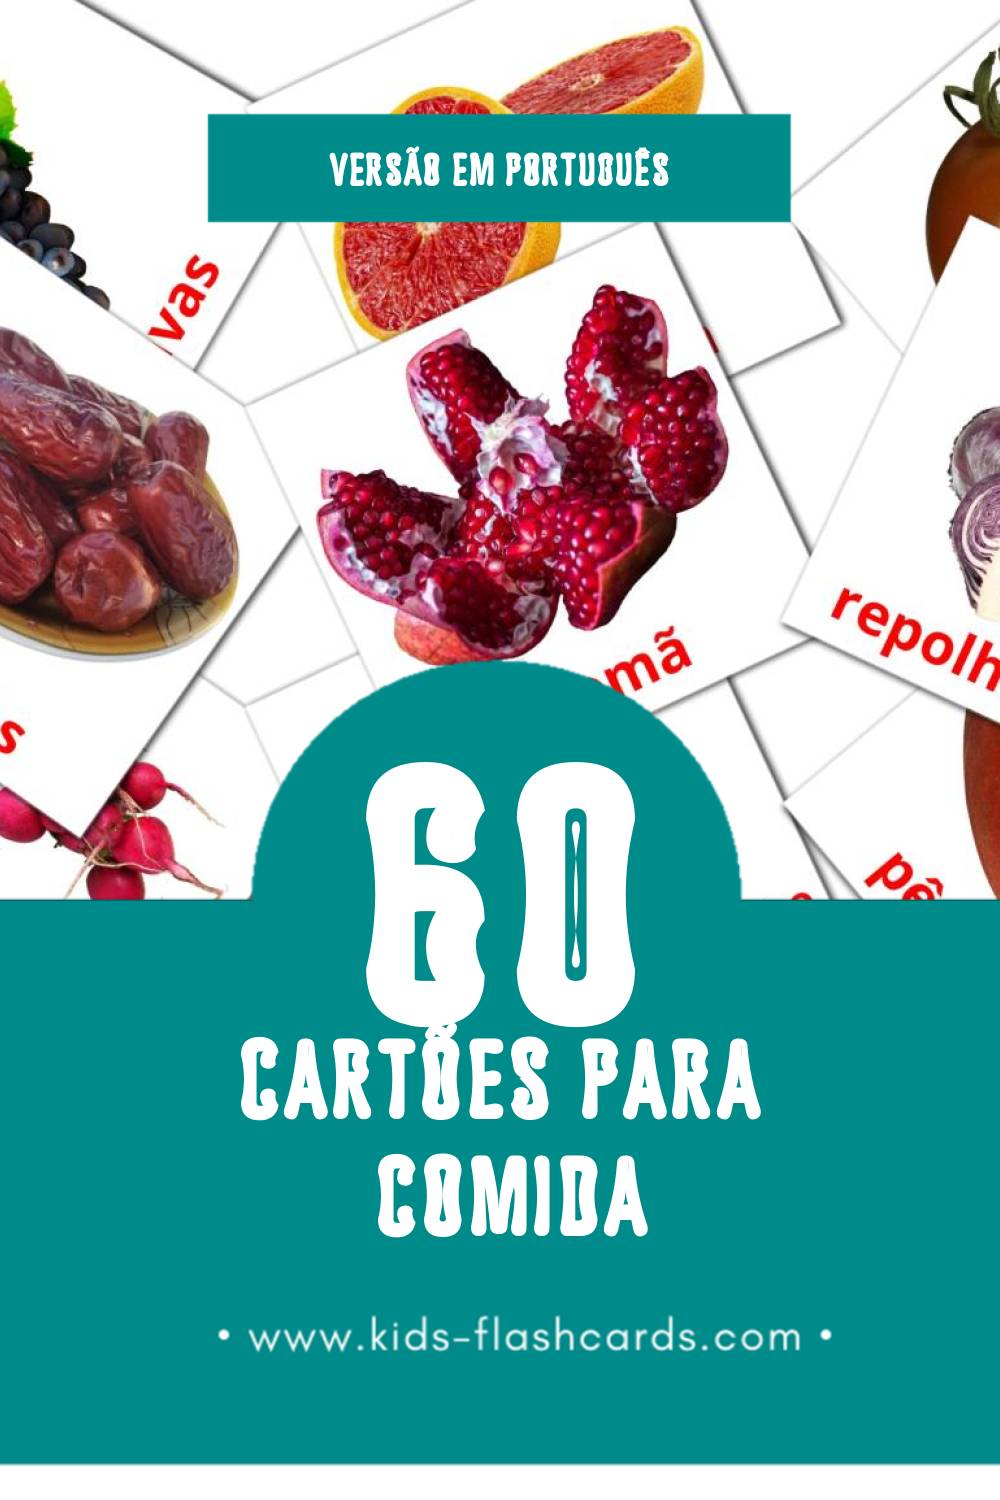 Flashcards de Comida Visuais para Toddlers (60 cartões em Português)